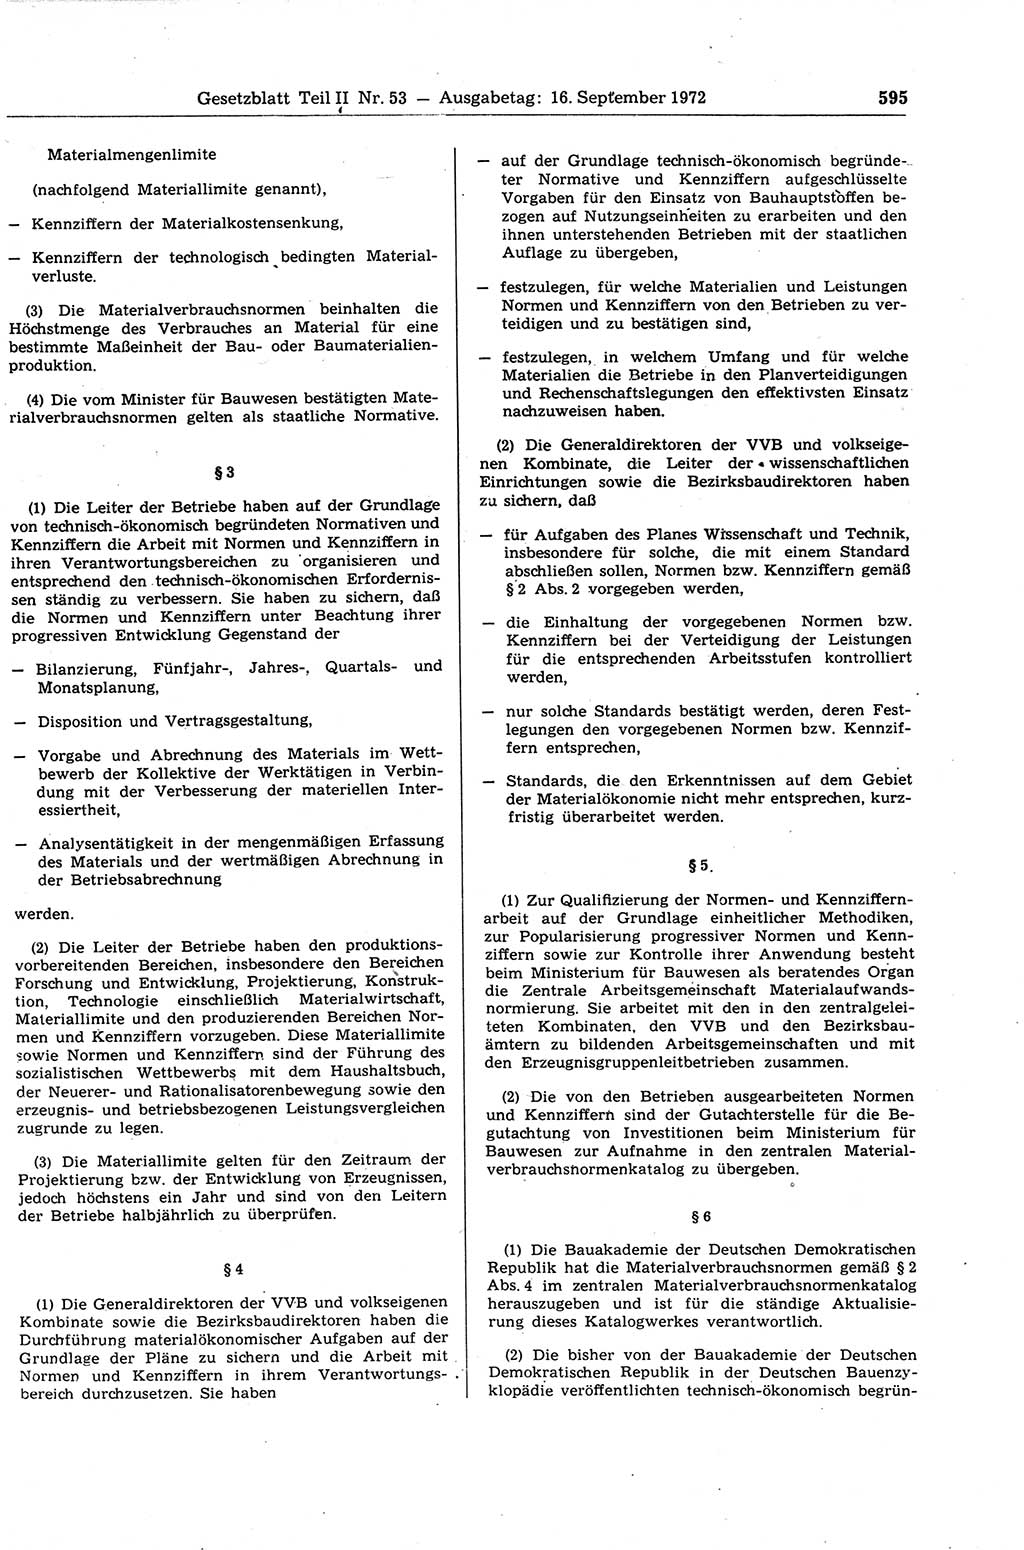 Gesetzblatt (GBl.) der Deutschen Demokratischen Republik (DDR) Teil ⅠⅠ 1972, Seite 595 (GBl. DDR ⅠⅠ 1972, S. 595)